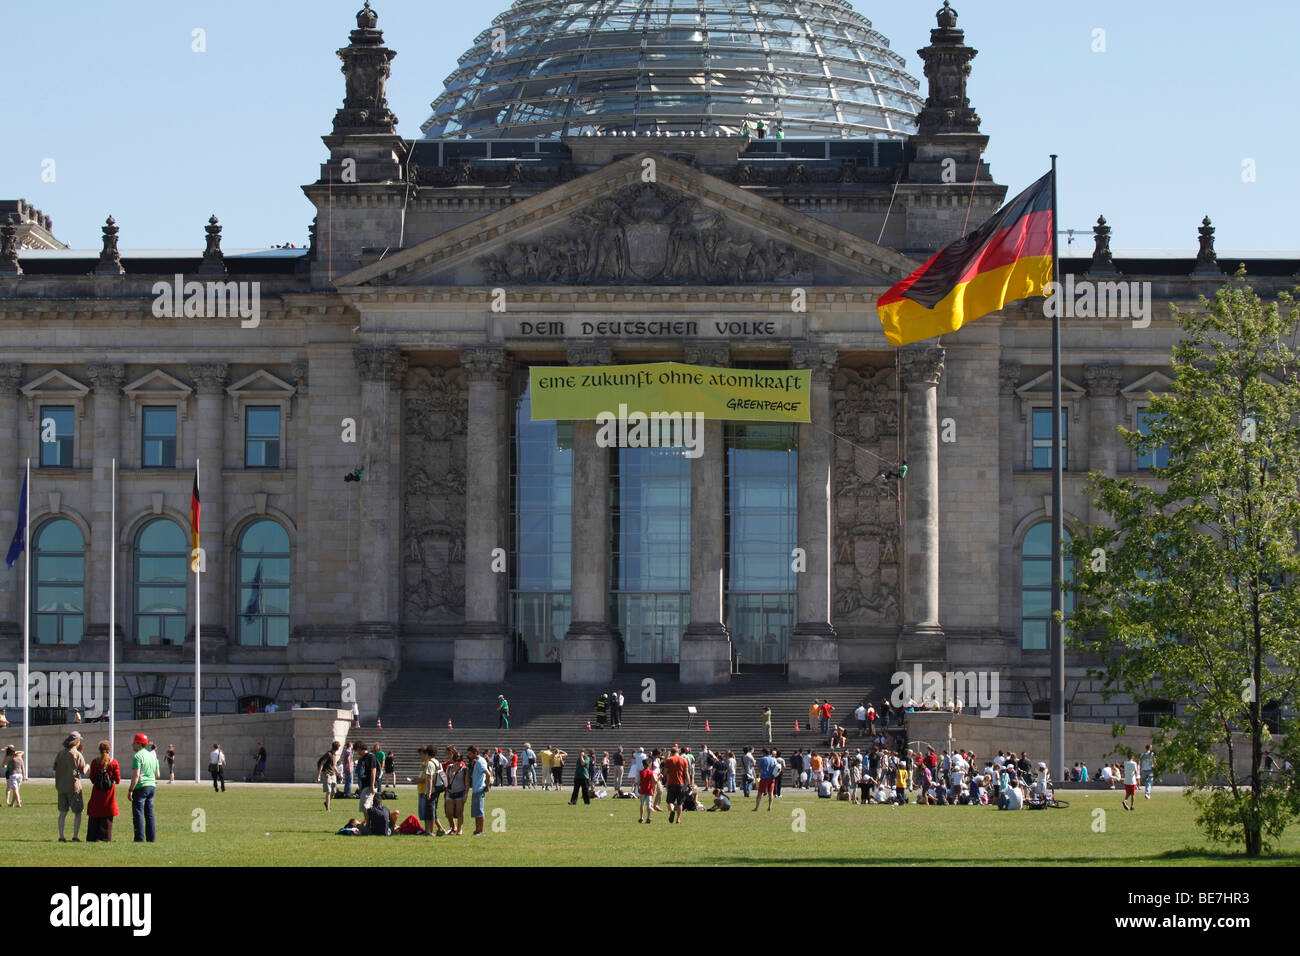 Berlín, el edificio del Reichstag. Ue/DE/DEU/GER/ Alemania/ capital Berlín. El edificio del Reichstag con la cúpula de cristal en la parte superior Foto de stock